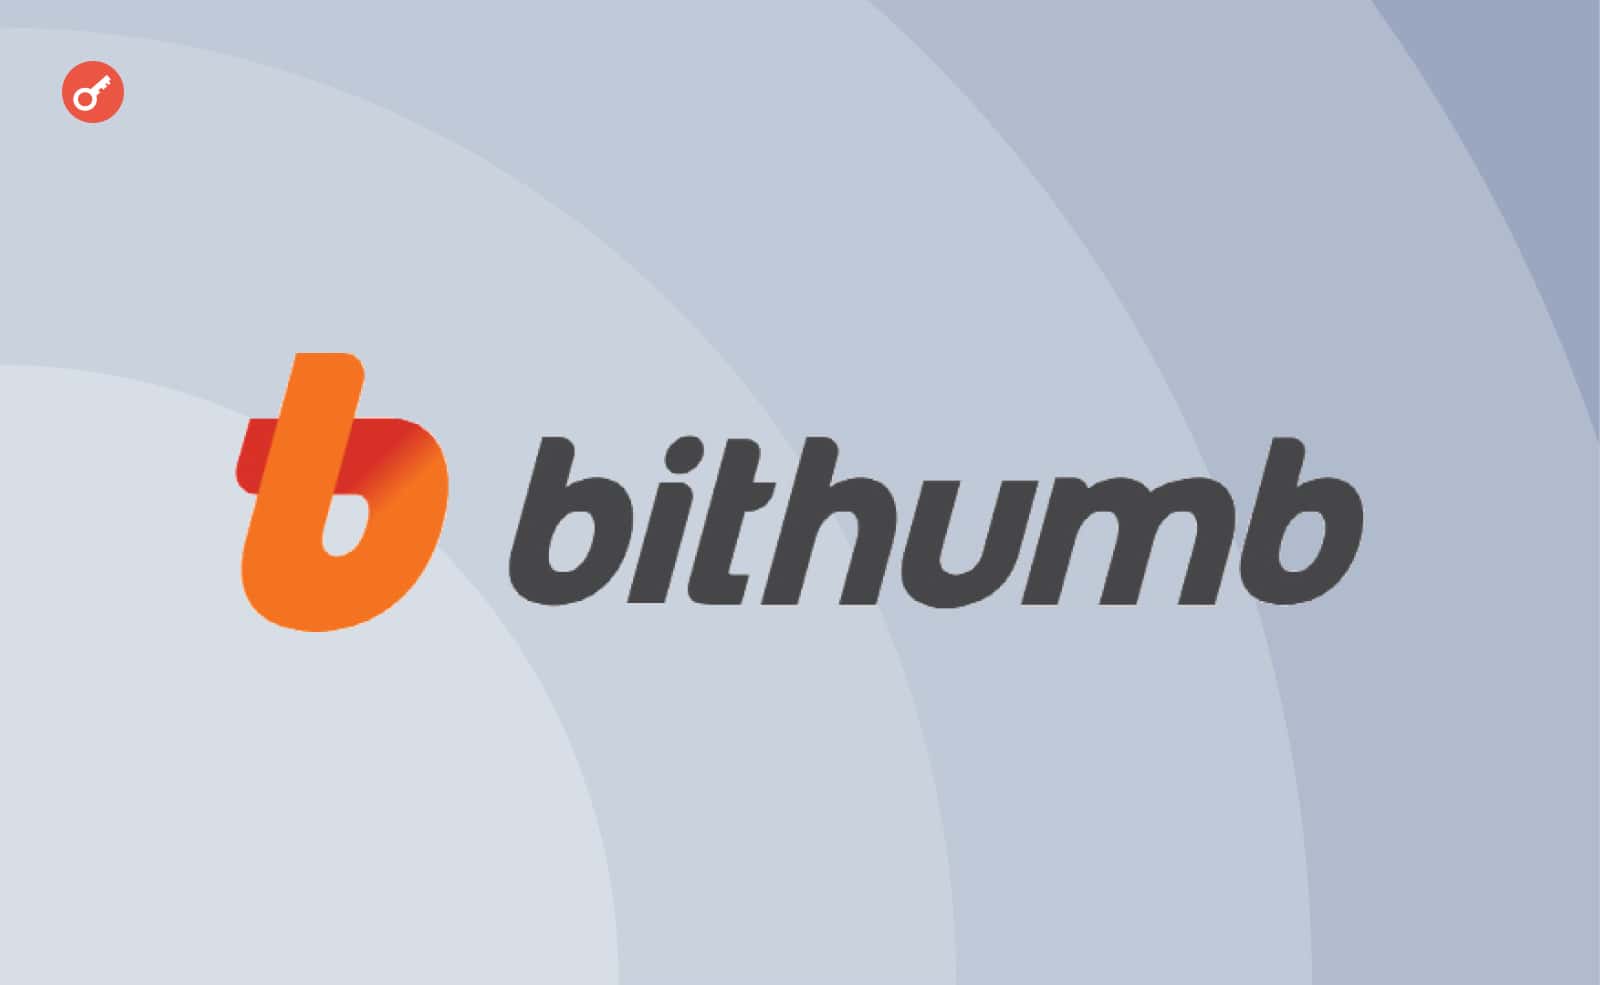 Південна Корея заарештує власника криптобіржі Bithumb. Головний колаж новини.